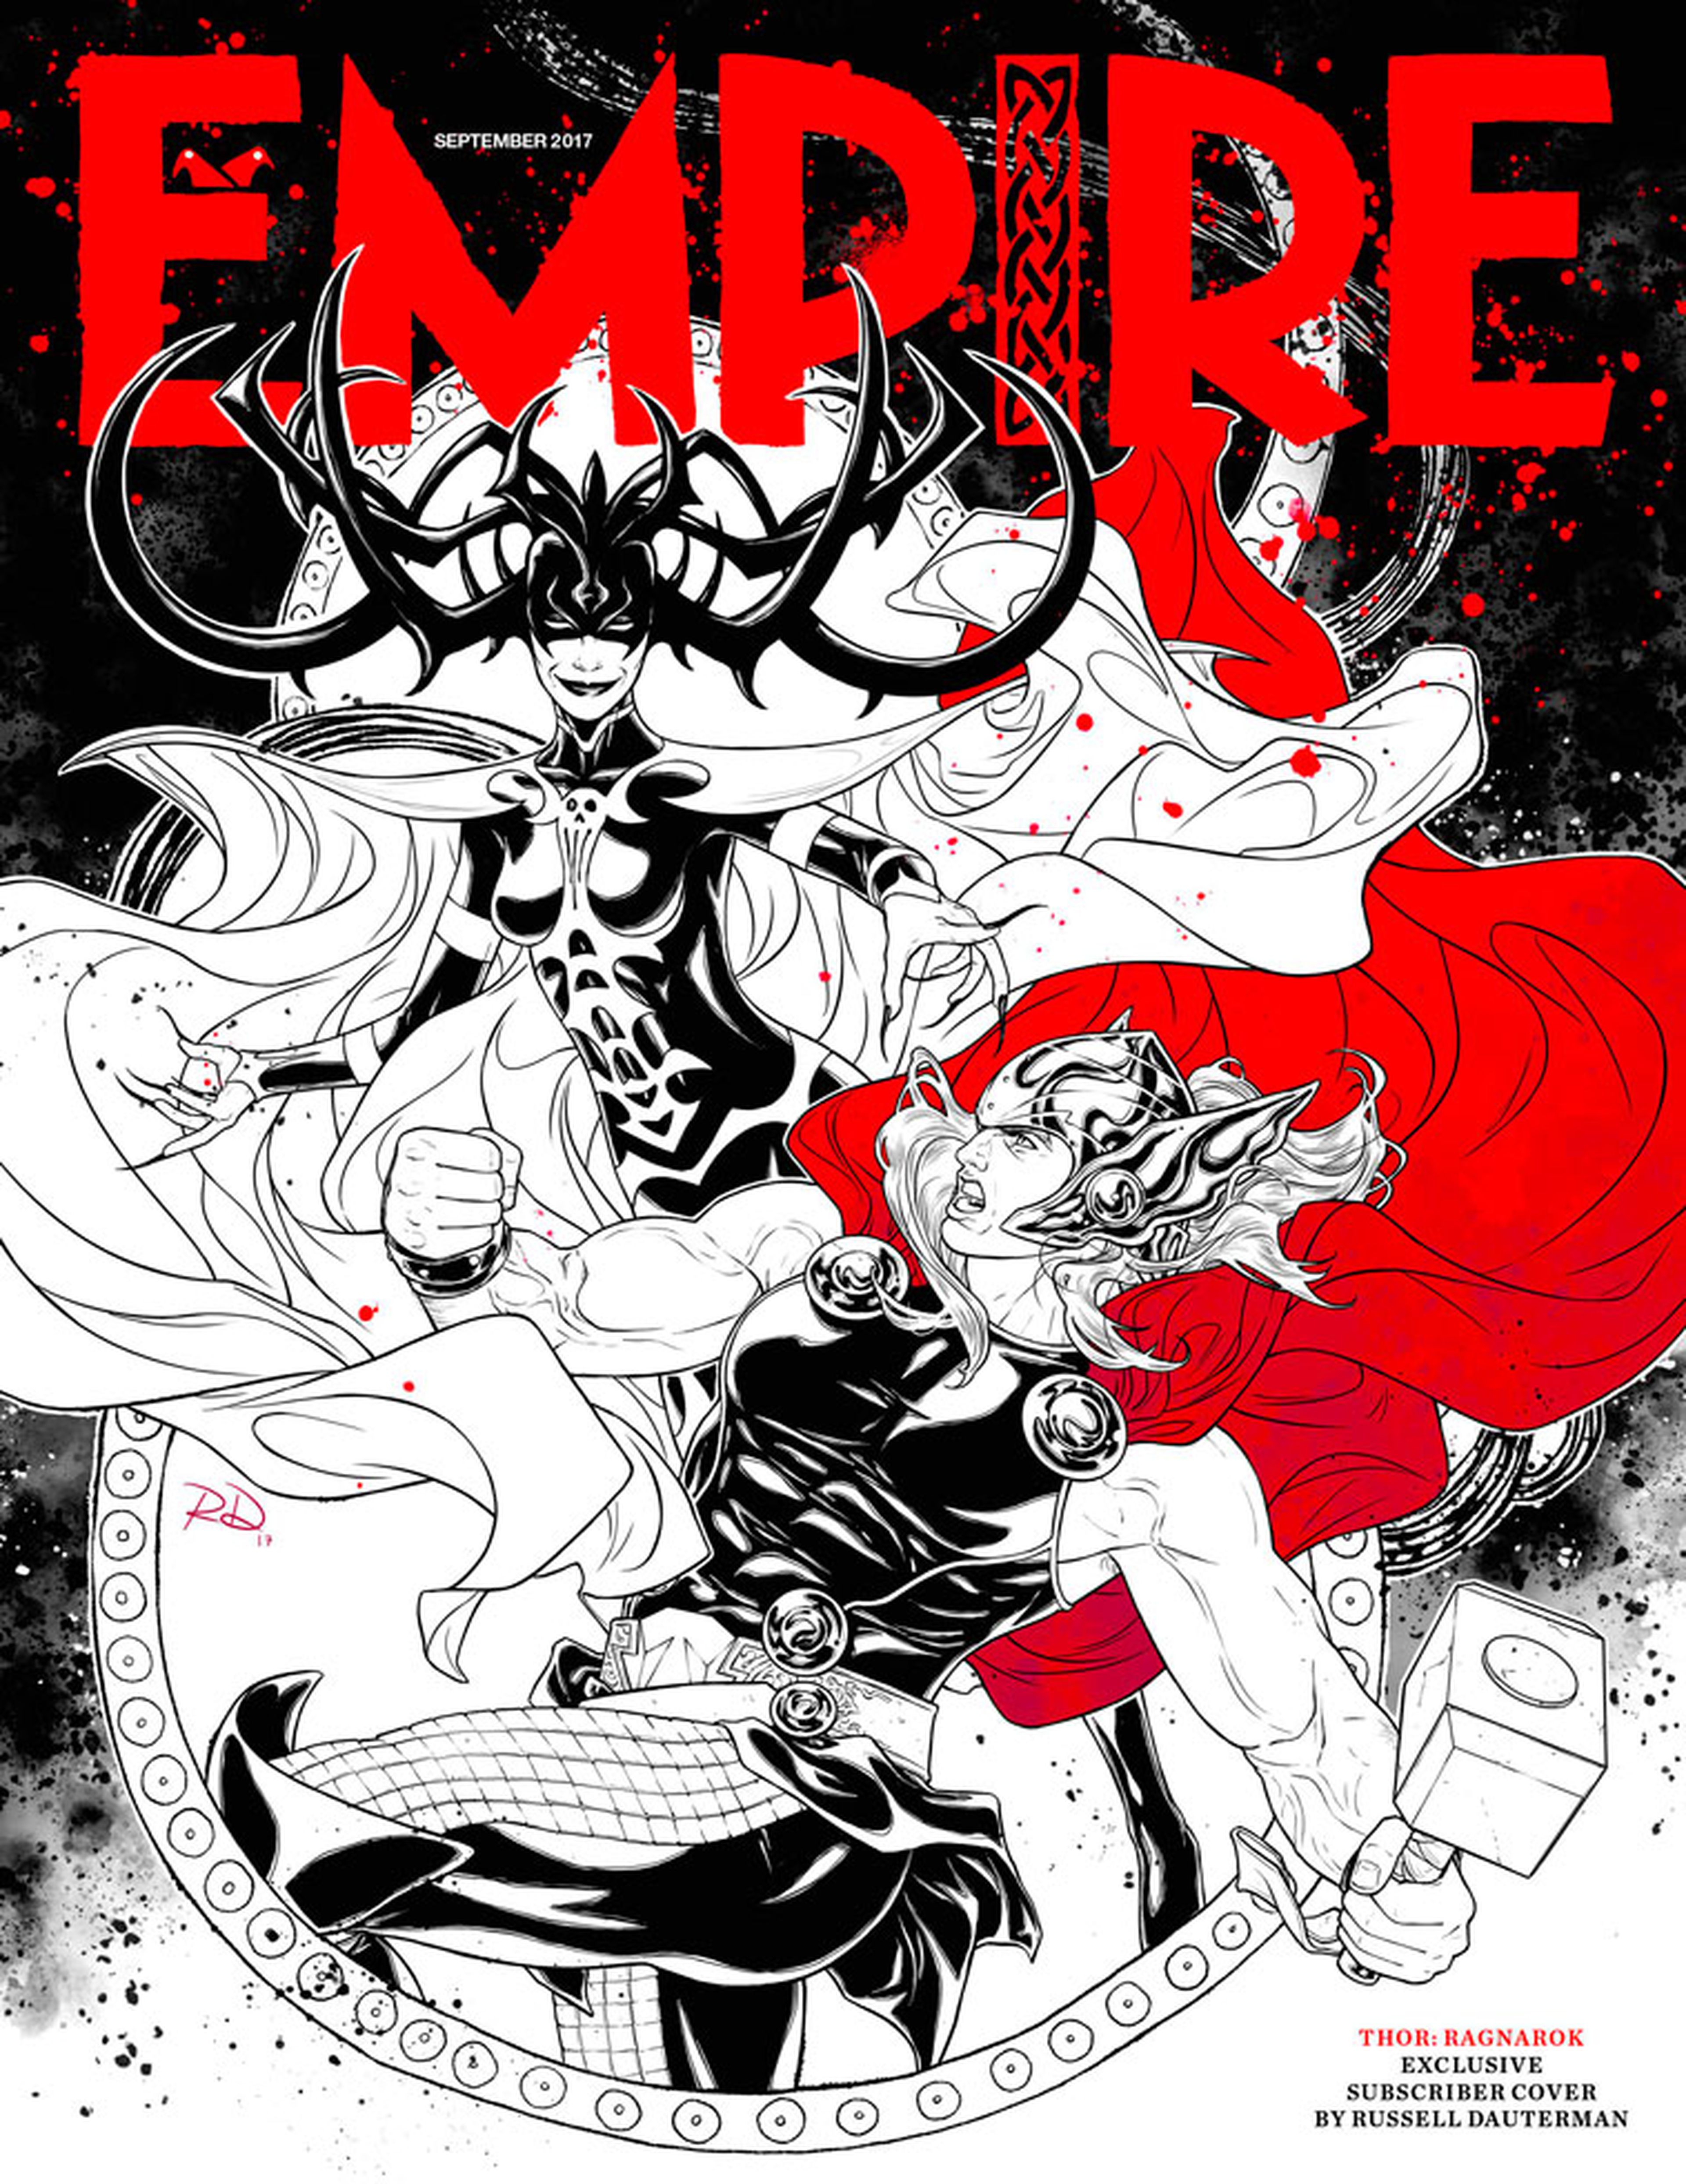 Thor: Ragnarok ilustración en la portada de la revista Empire